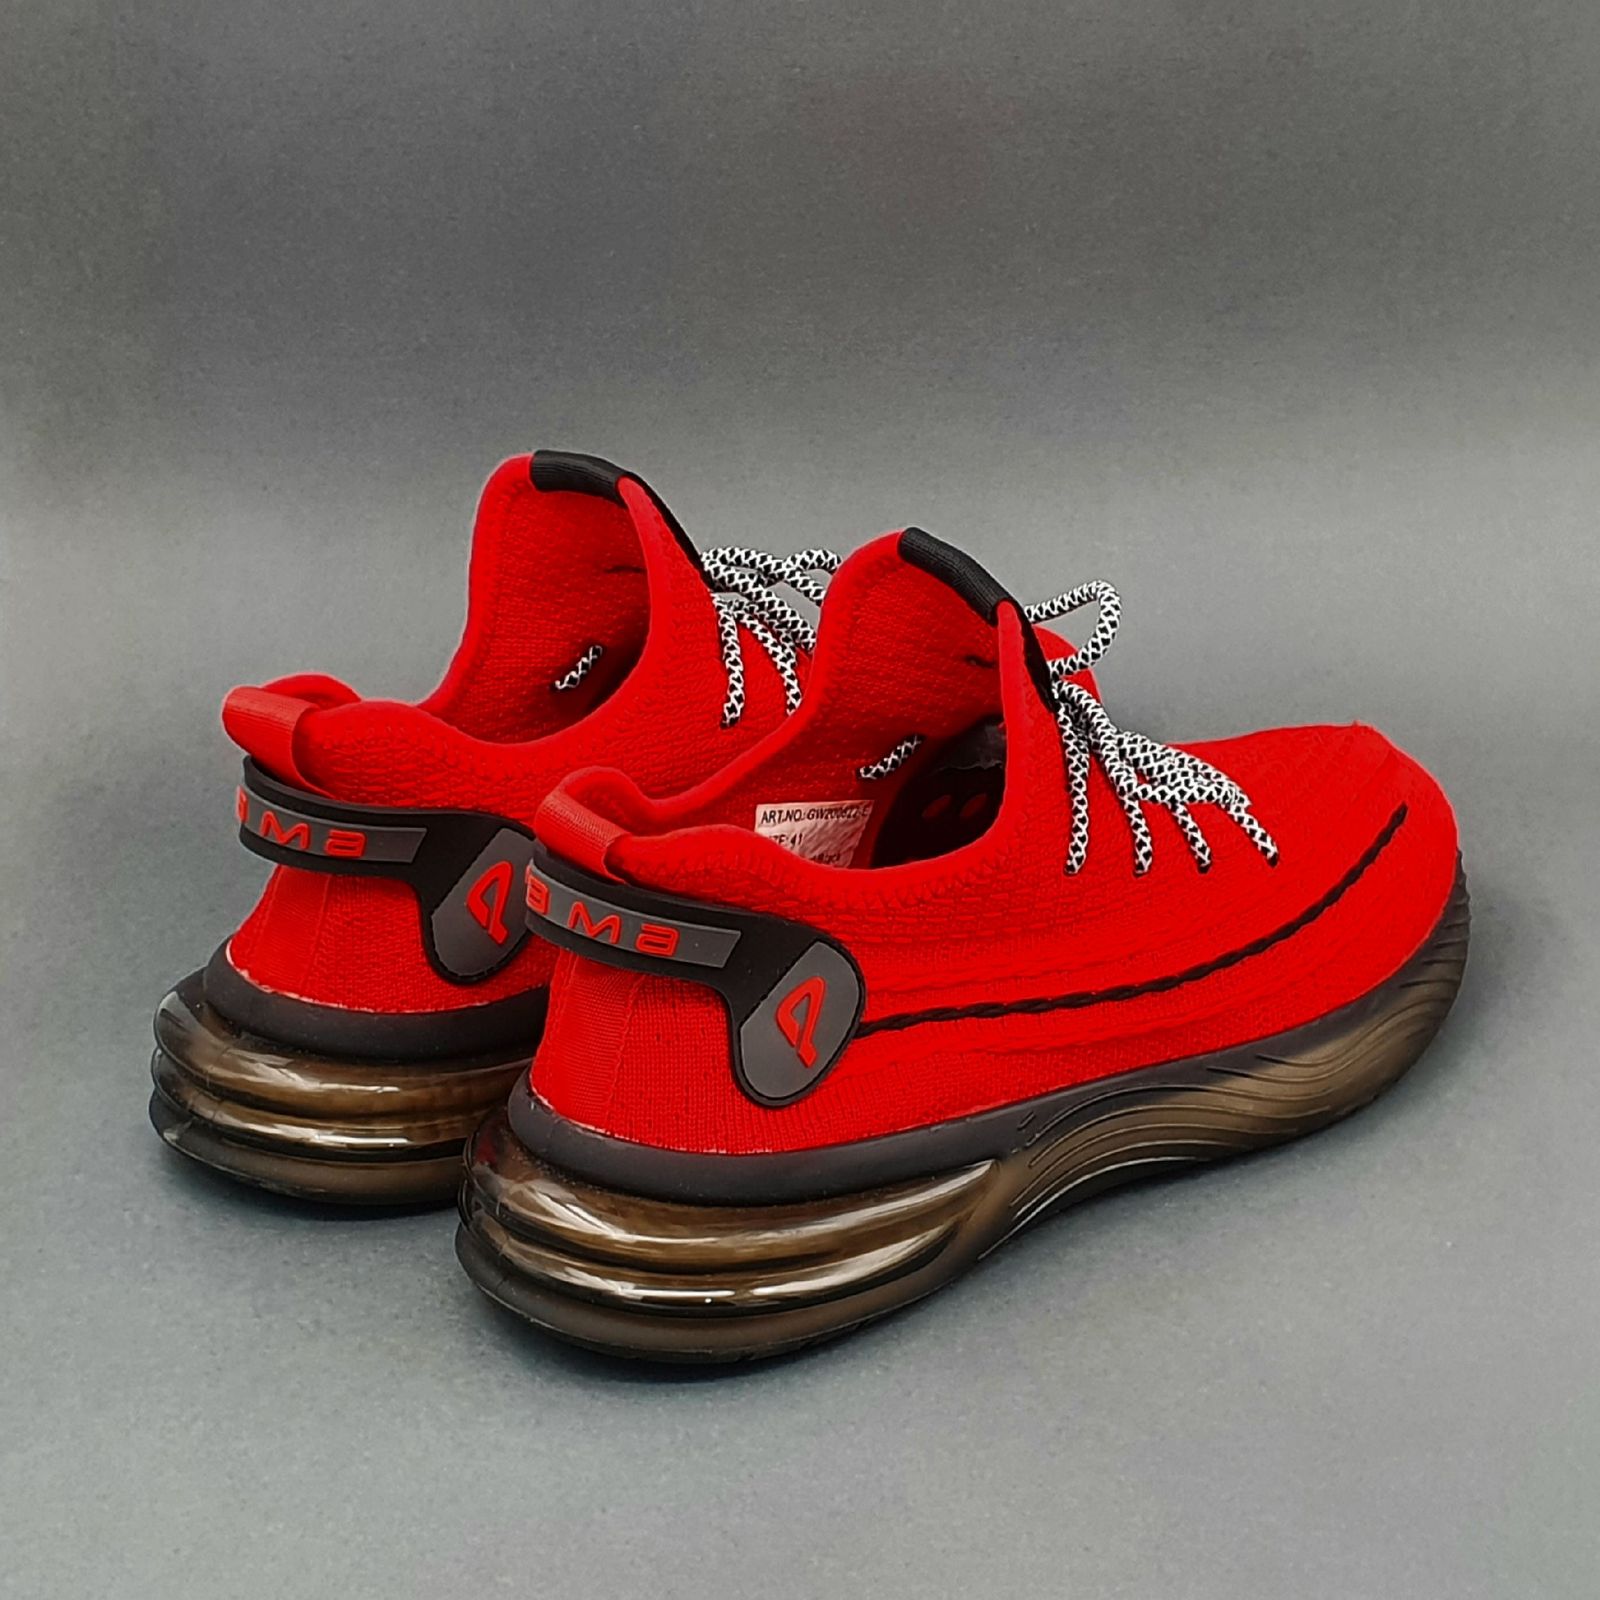 کفش پیاده روی مردانه پاما مدل VR-822 کد G1602 -  - 3